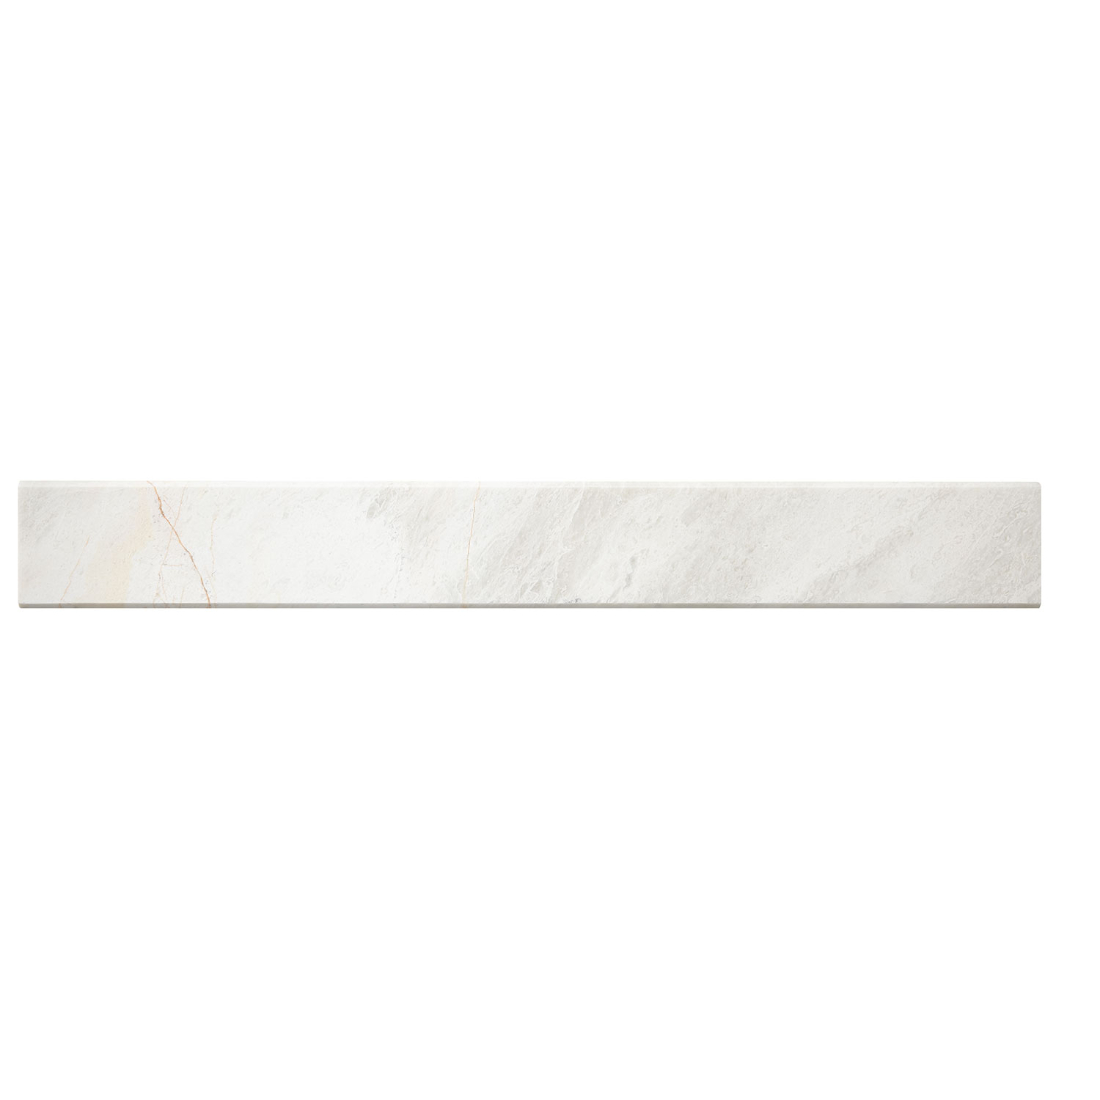 Meram Blc Carrara P. Thres 91.5x11.5x2cm